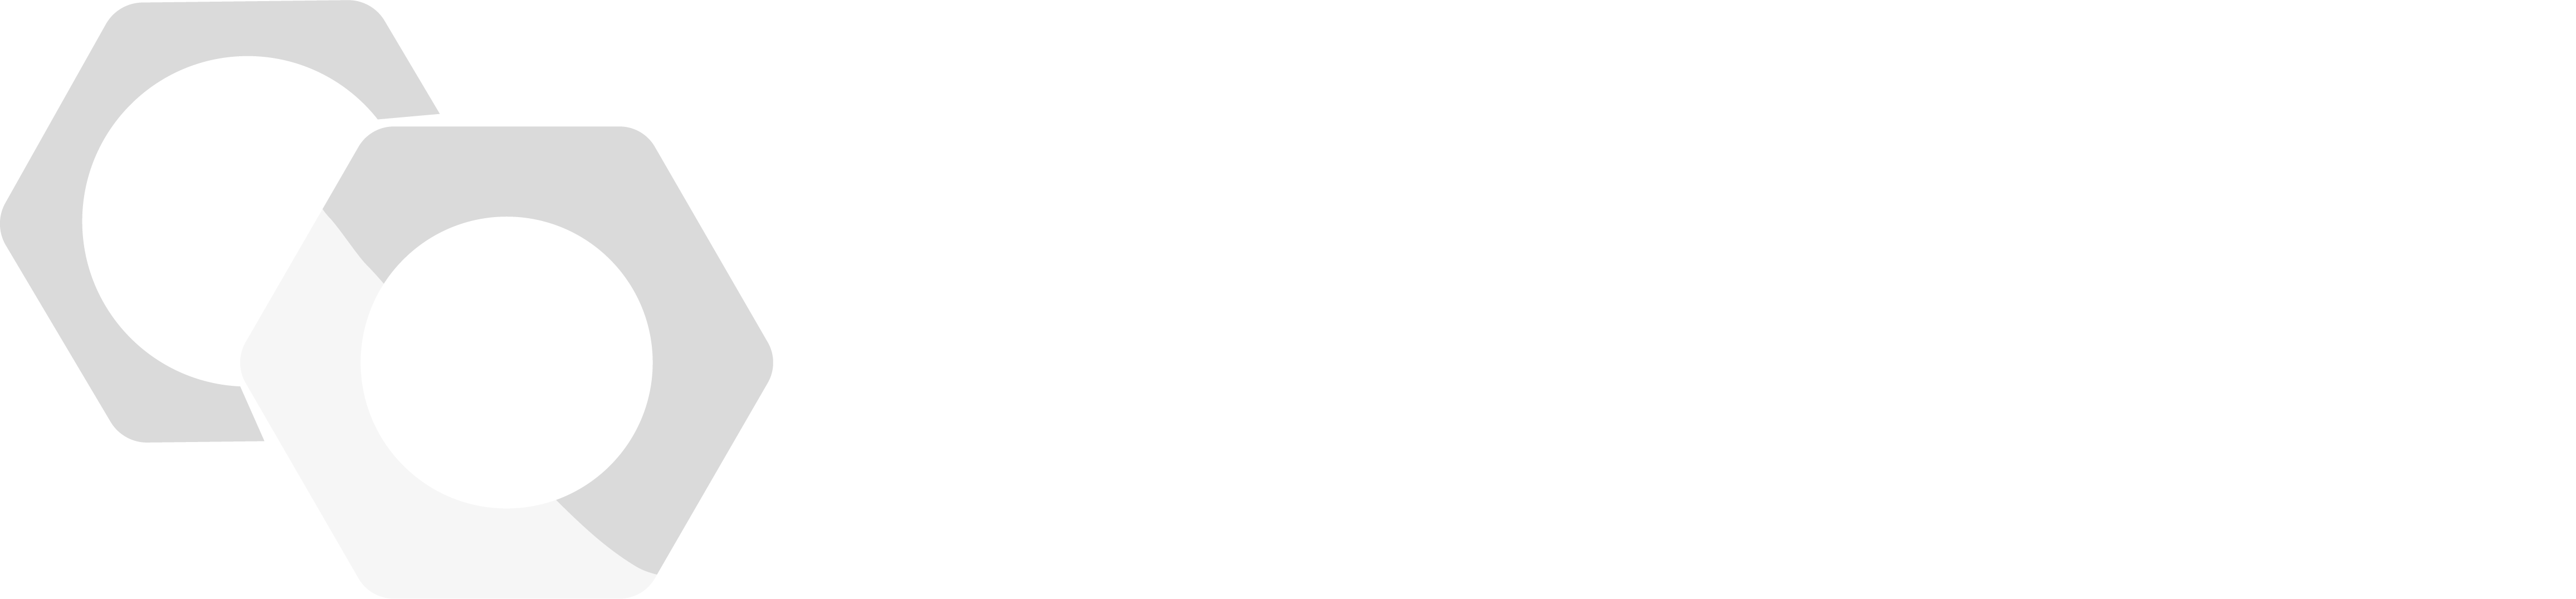 logo feuvrier mecanique precision 